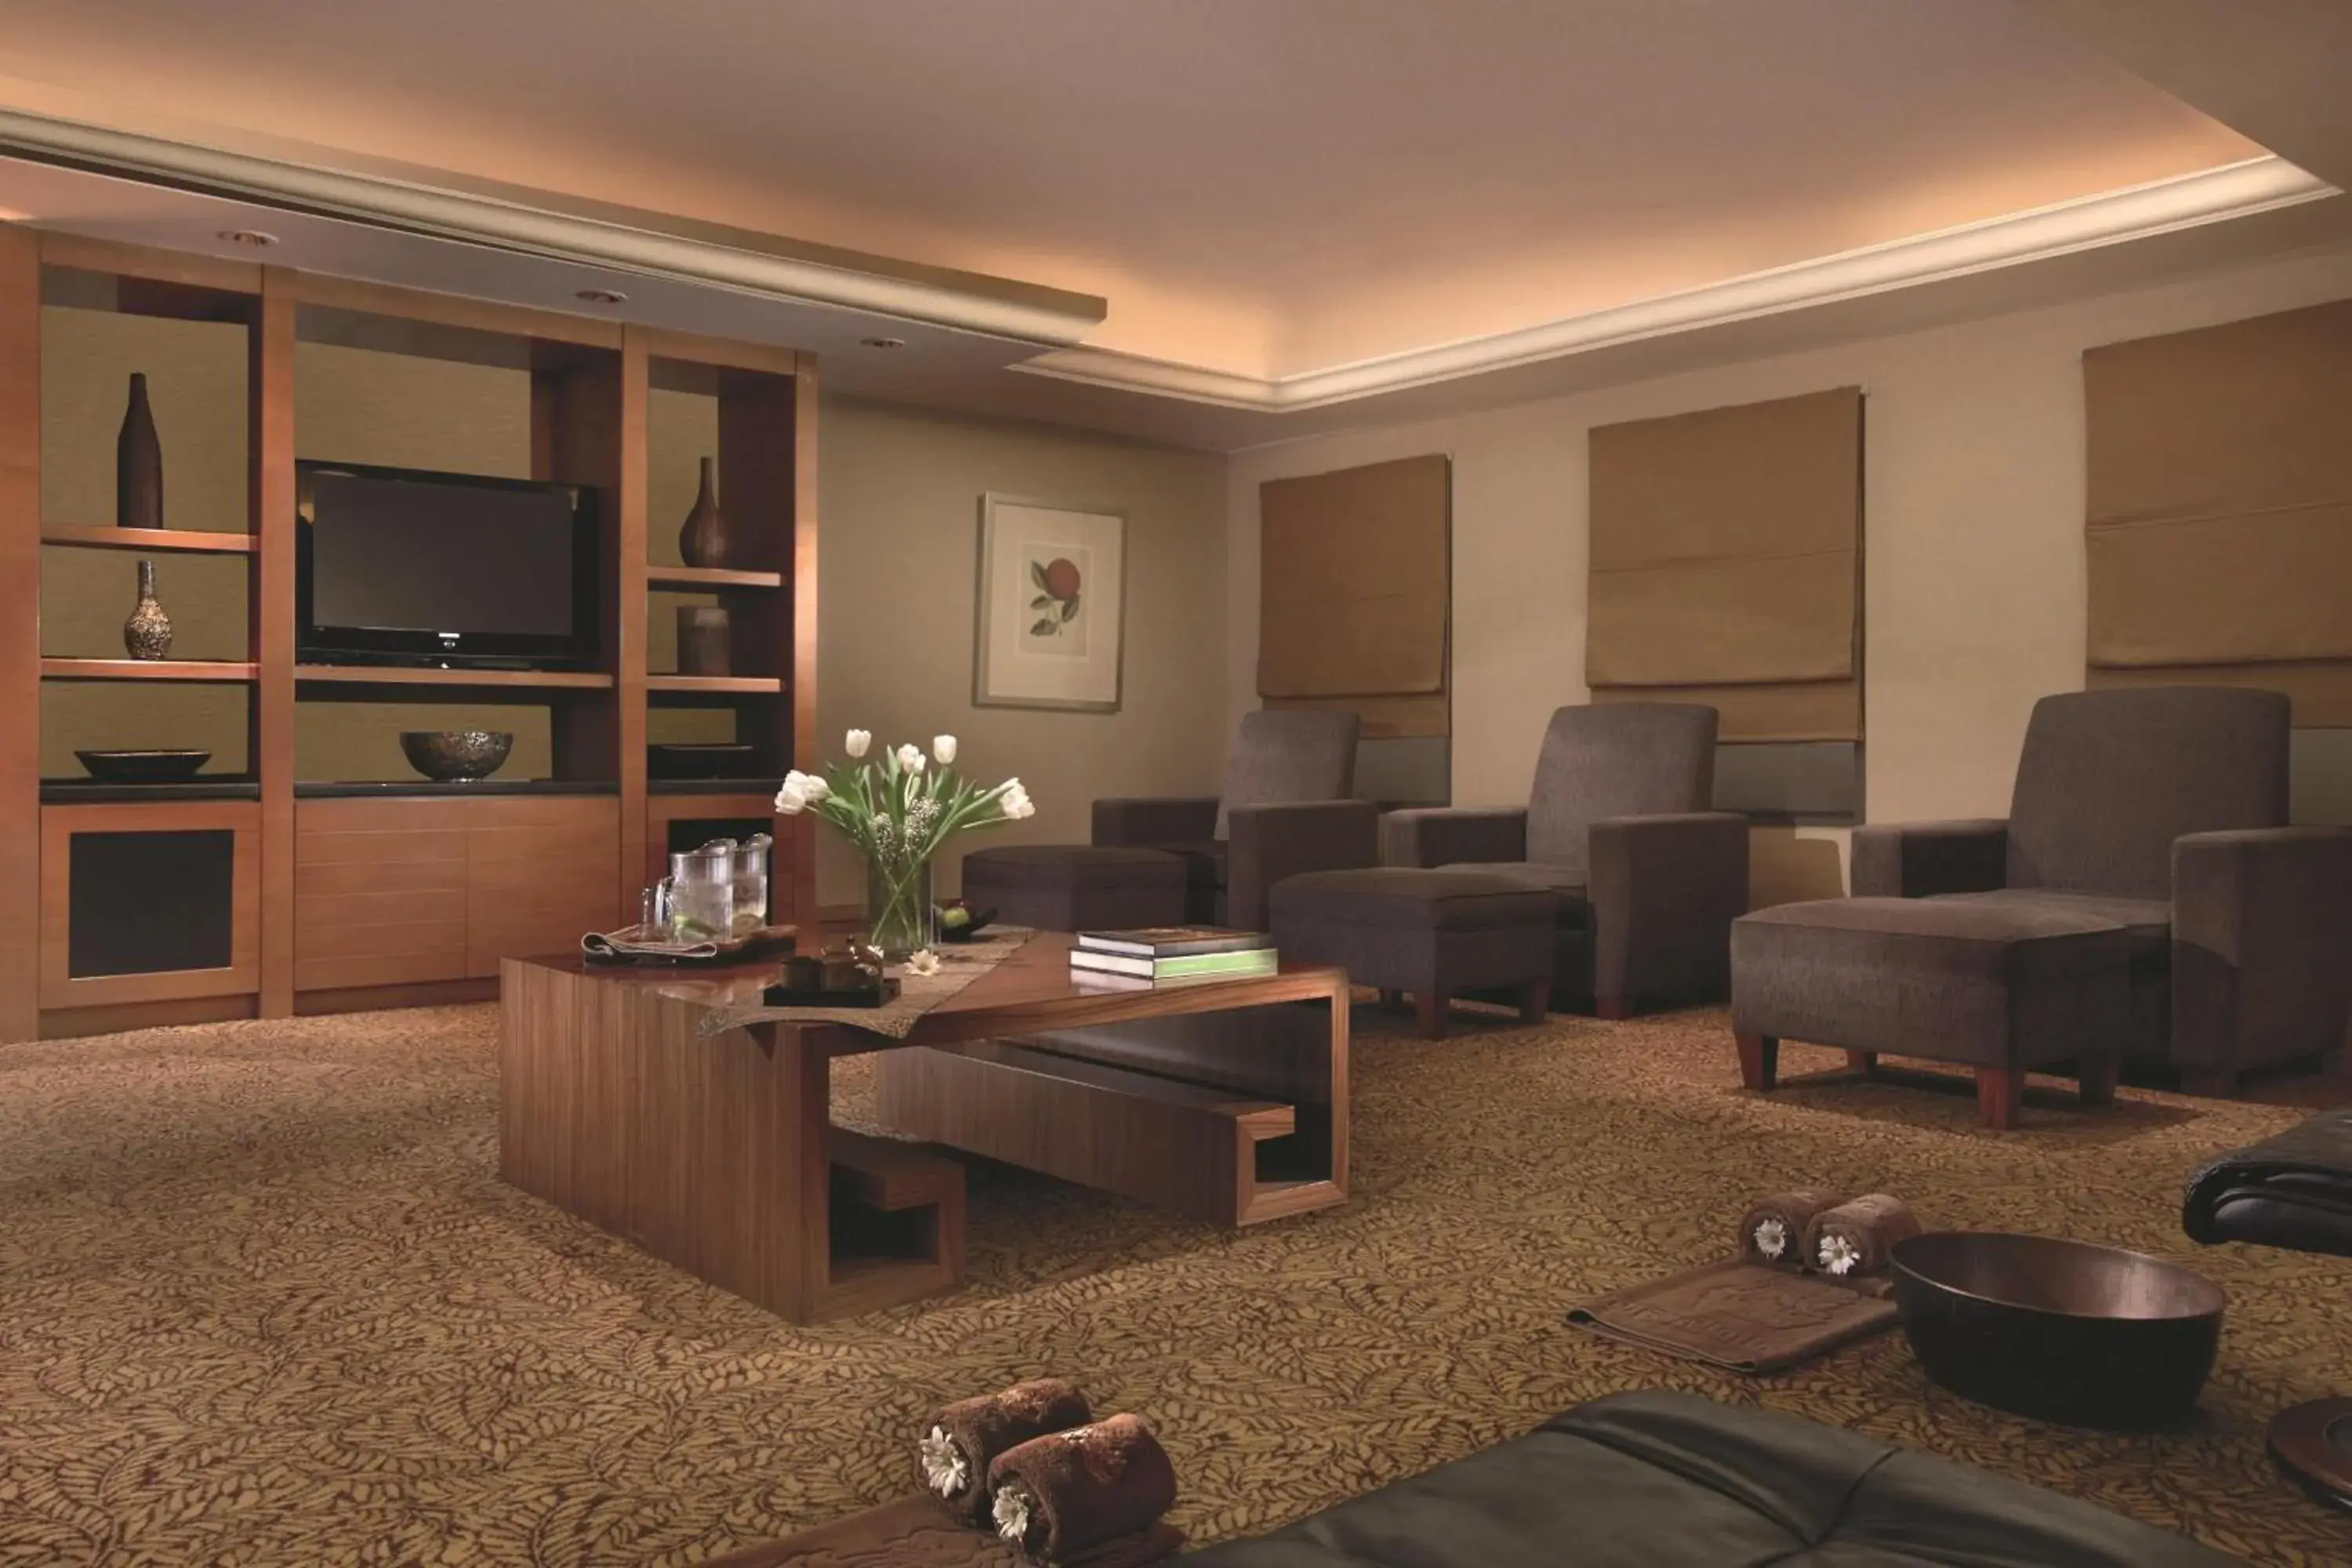 Lounge or bar, Seating Area in The Ritz-Carlton Jakarta, Mega Kuningan